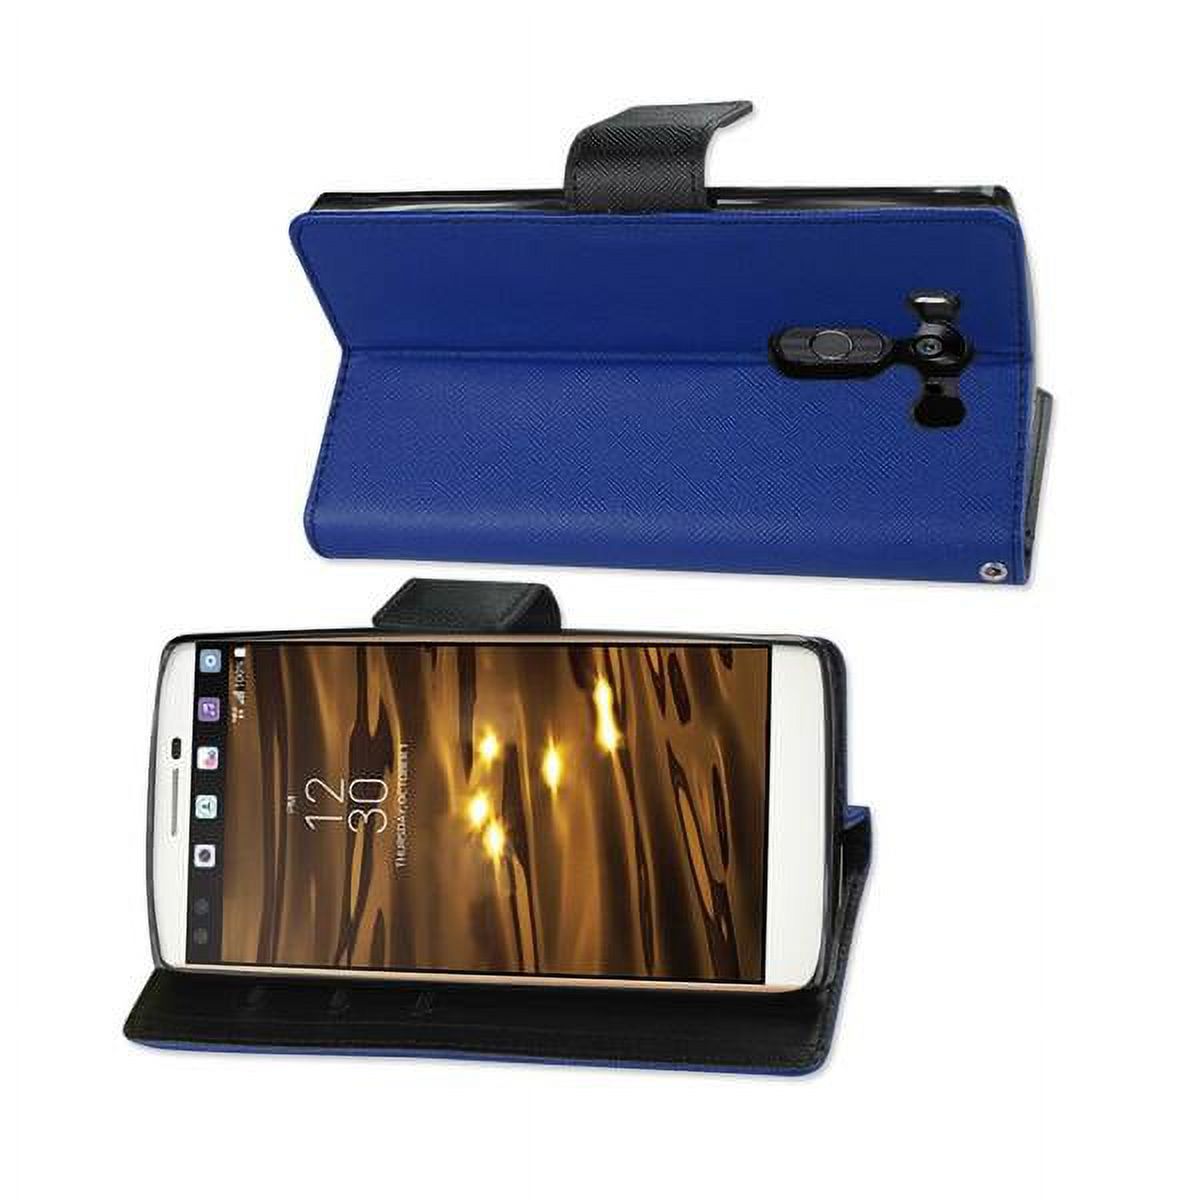 Reiko Flip Stand Leather Wallet Card Case for LG V10 - Navy/Black - image 2 of 4